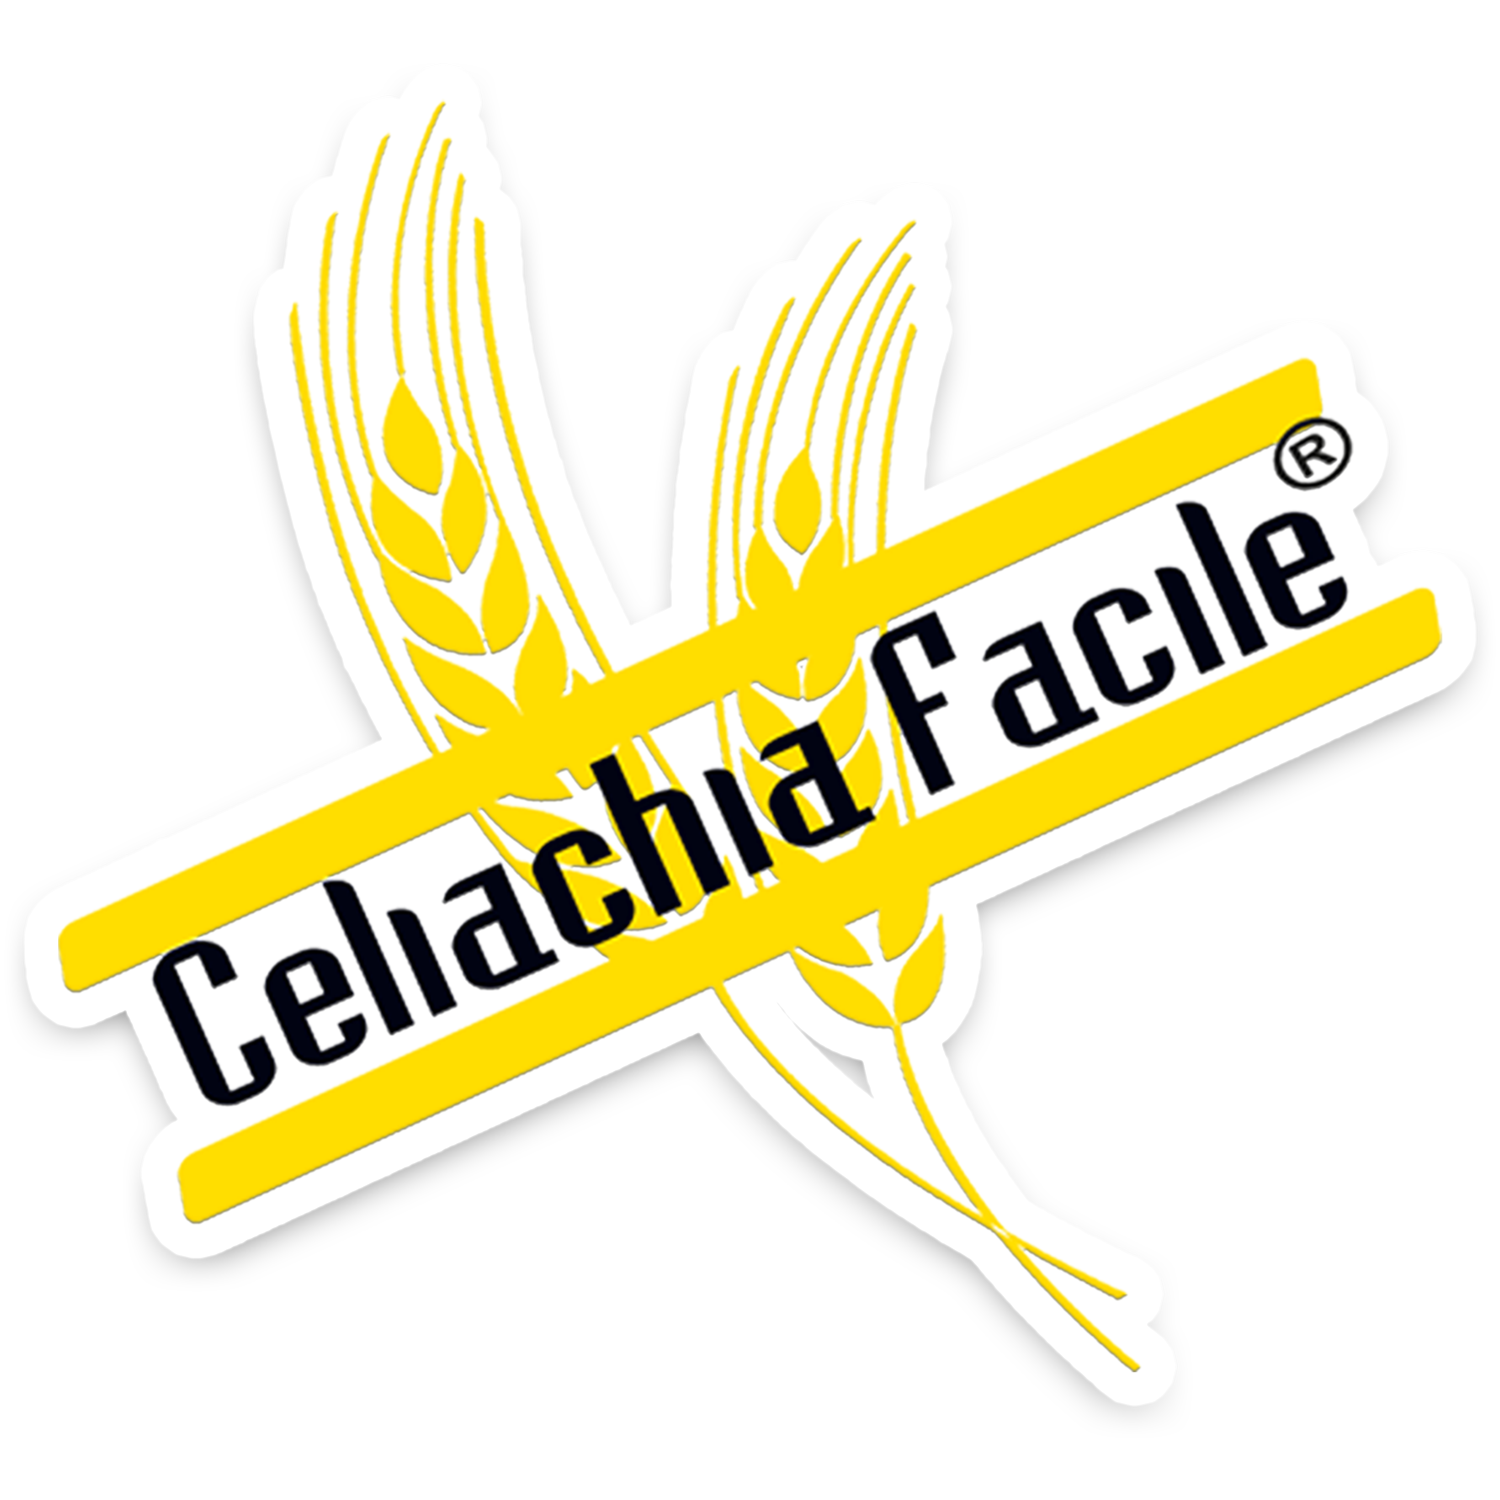 Celiachia Facile